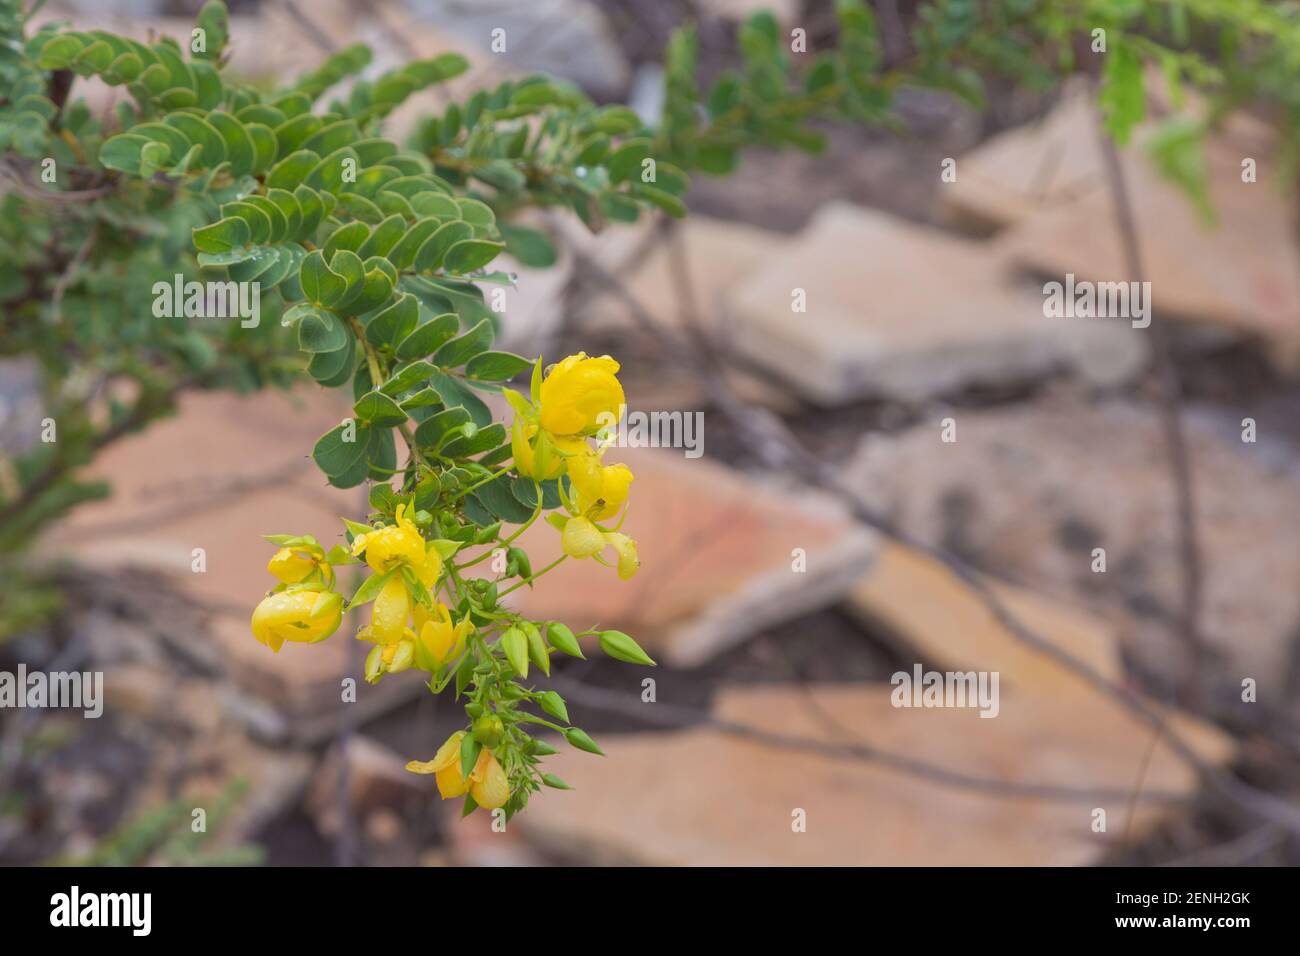 Eine gelb blühende Pflanze, wahrscheinlich Fabaceae Familie, in natürlichen Lebensraum in der Nähe von Cristalia in Minas Gerais Stockfoto